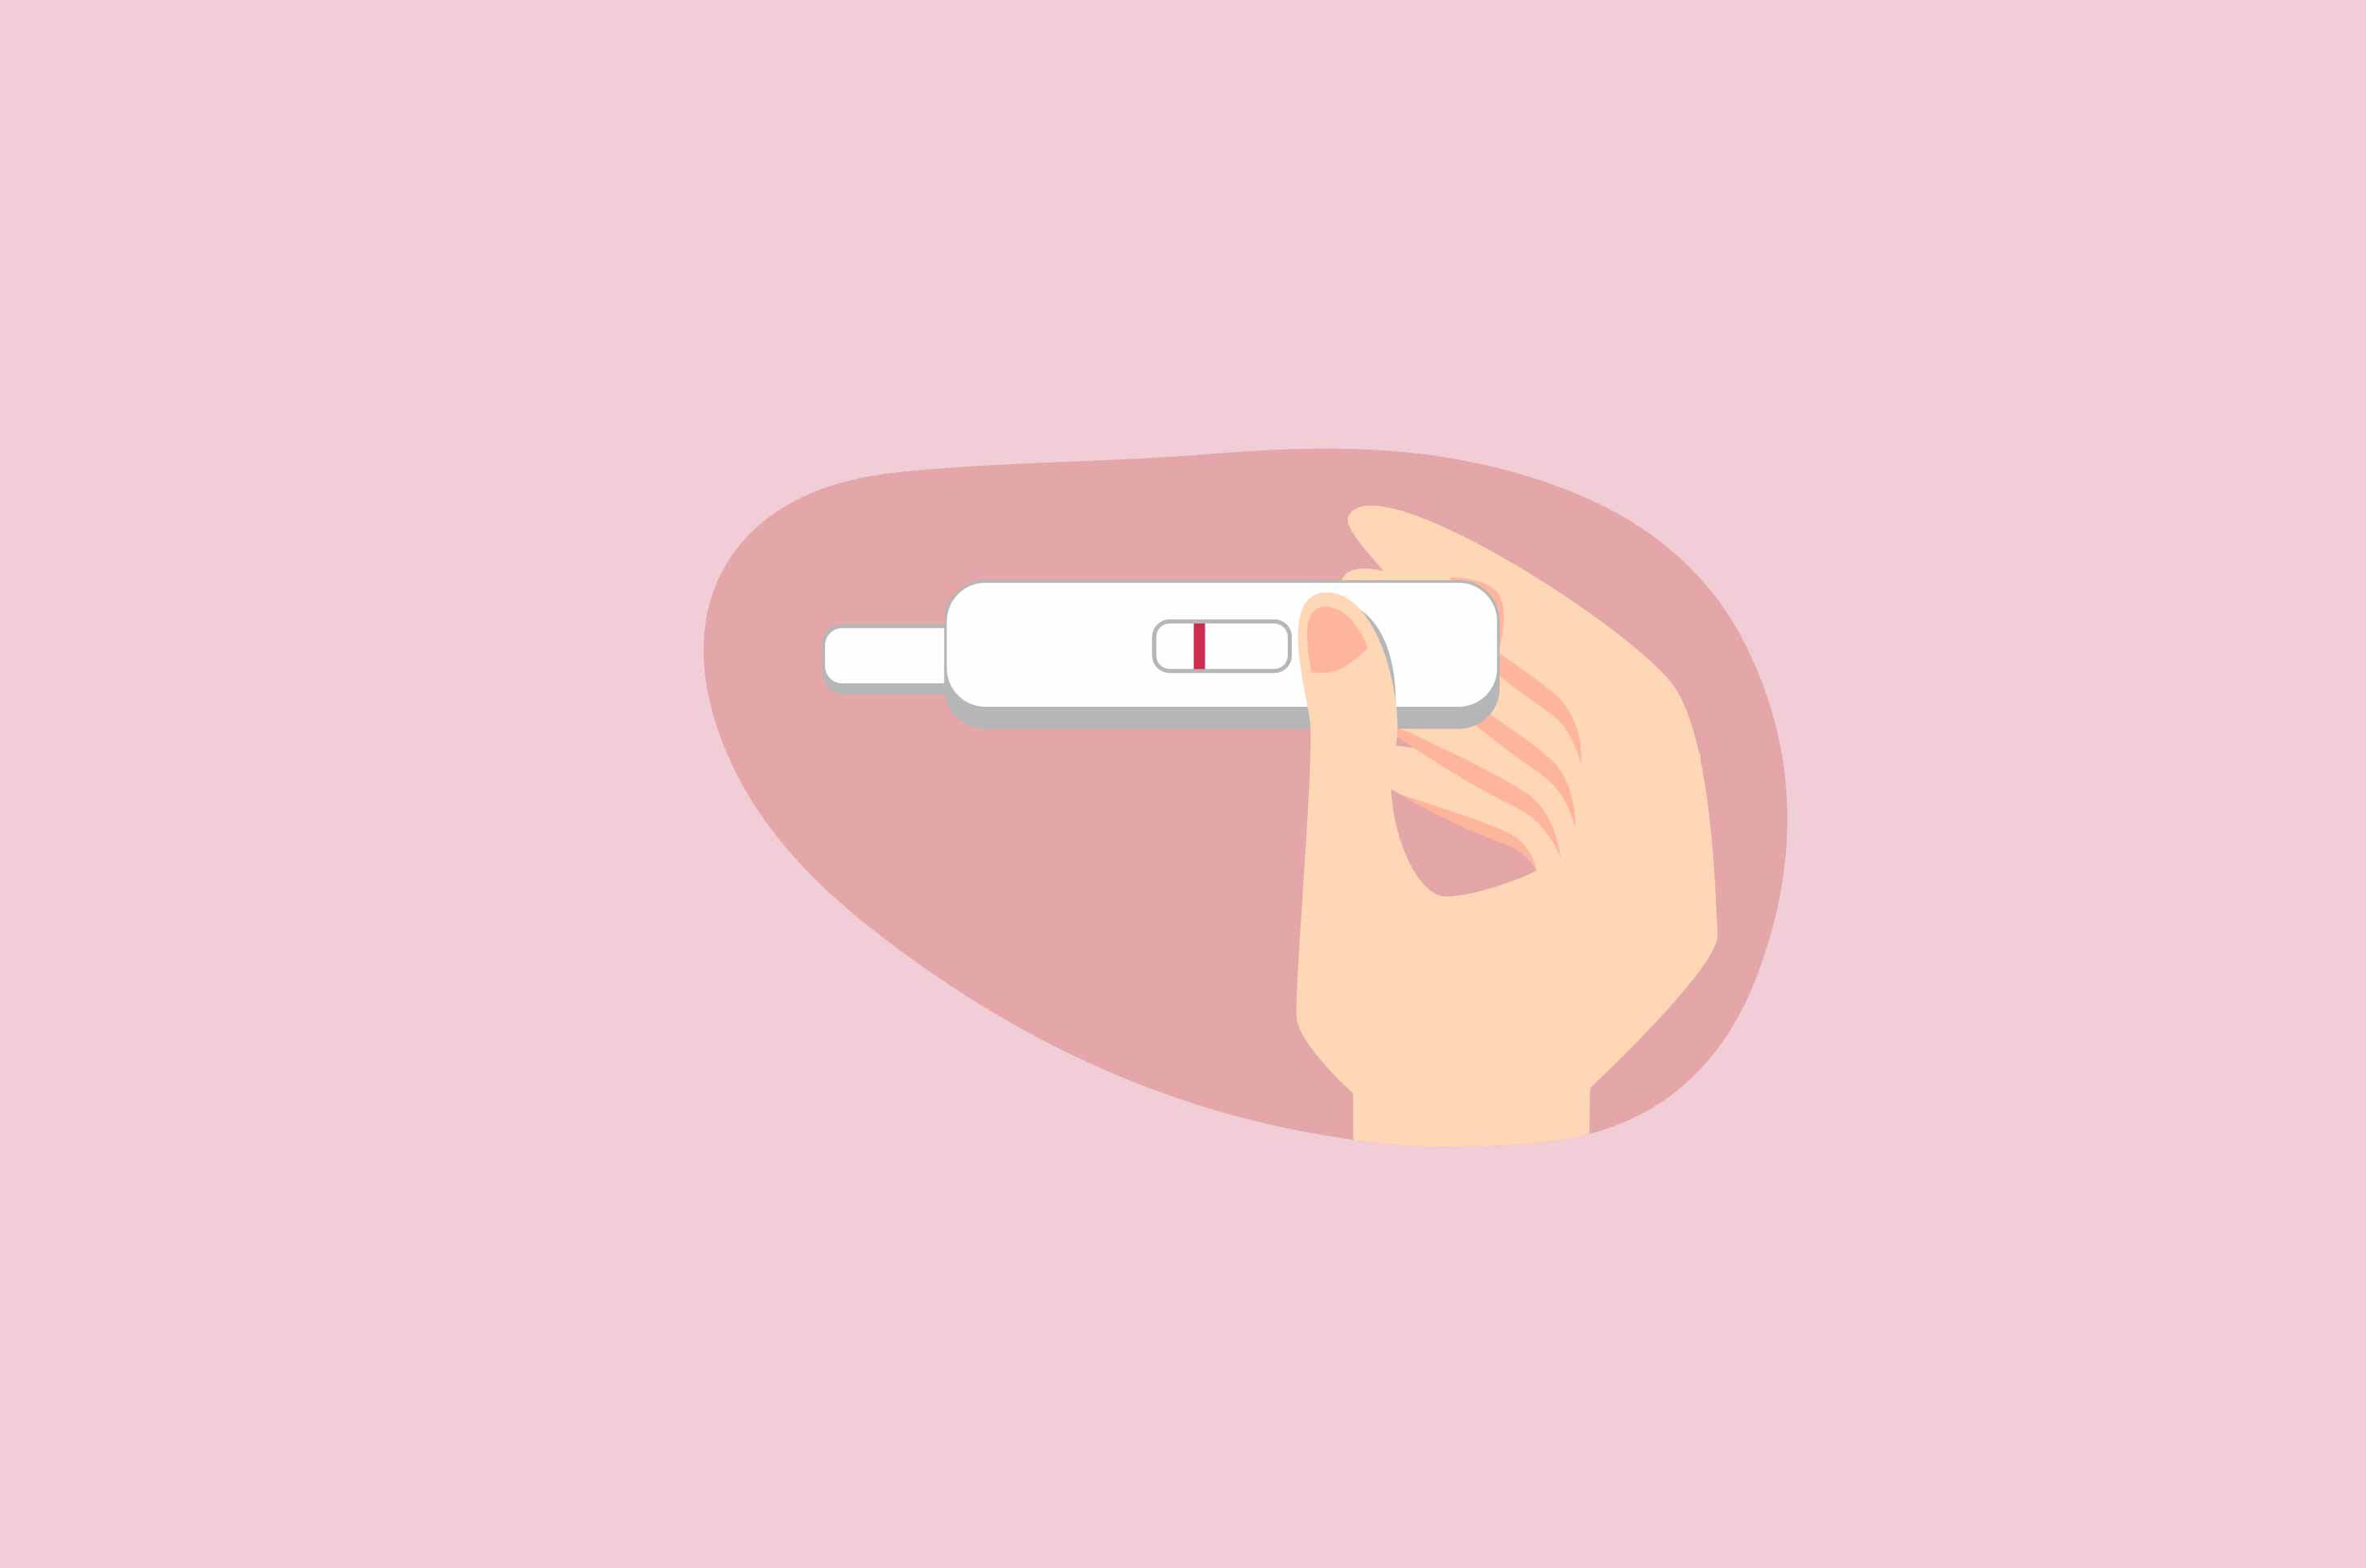 Les femmes ont du mal à tomber enceinte à cause de menstruations irrégulières, quelle en est la raison ?